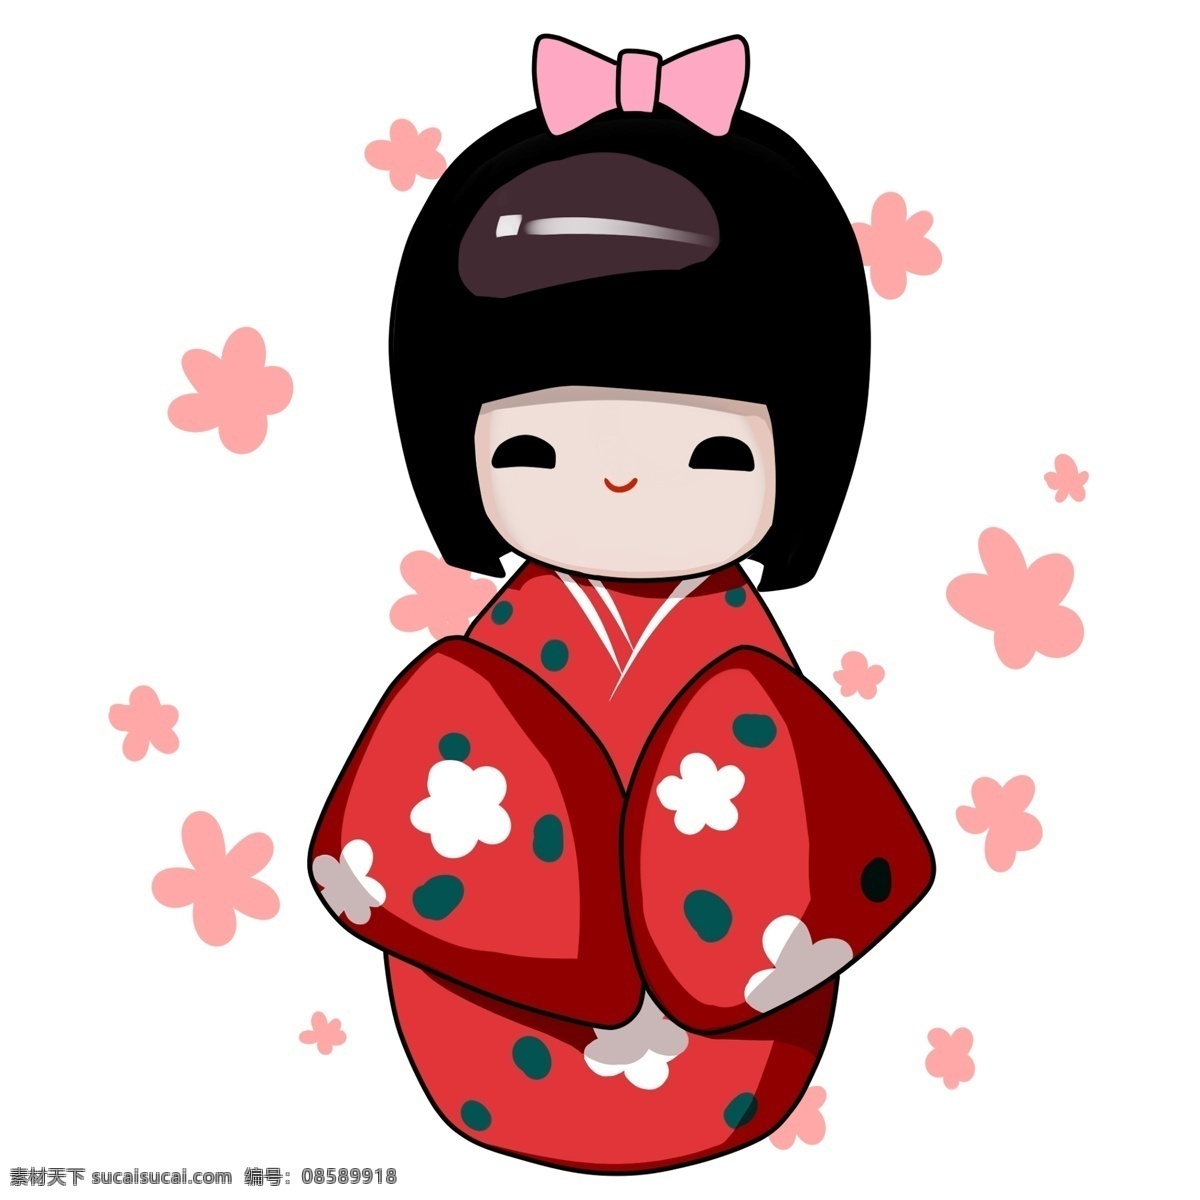 日本 娃娃 装饰 插画 日本娃娃 可爱的娃娃 漂亮的娃娃 开心的娃娃 娃娃装饰 娃娃插画 粉色的蝴蝶结